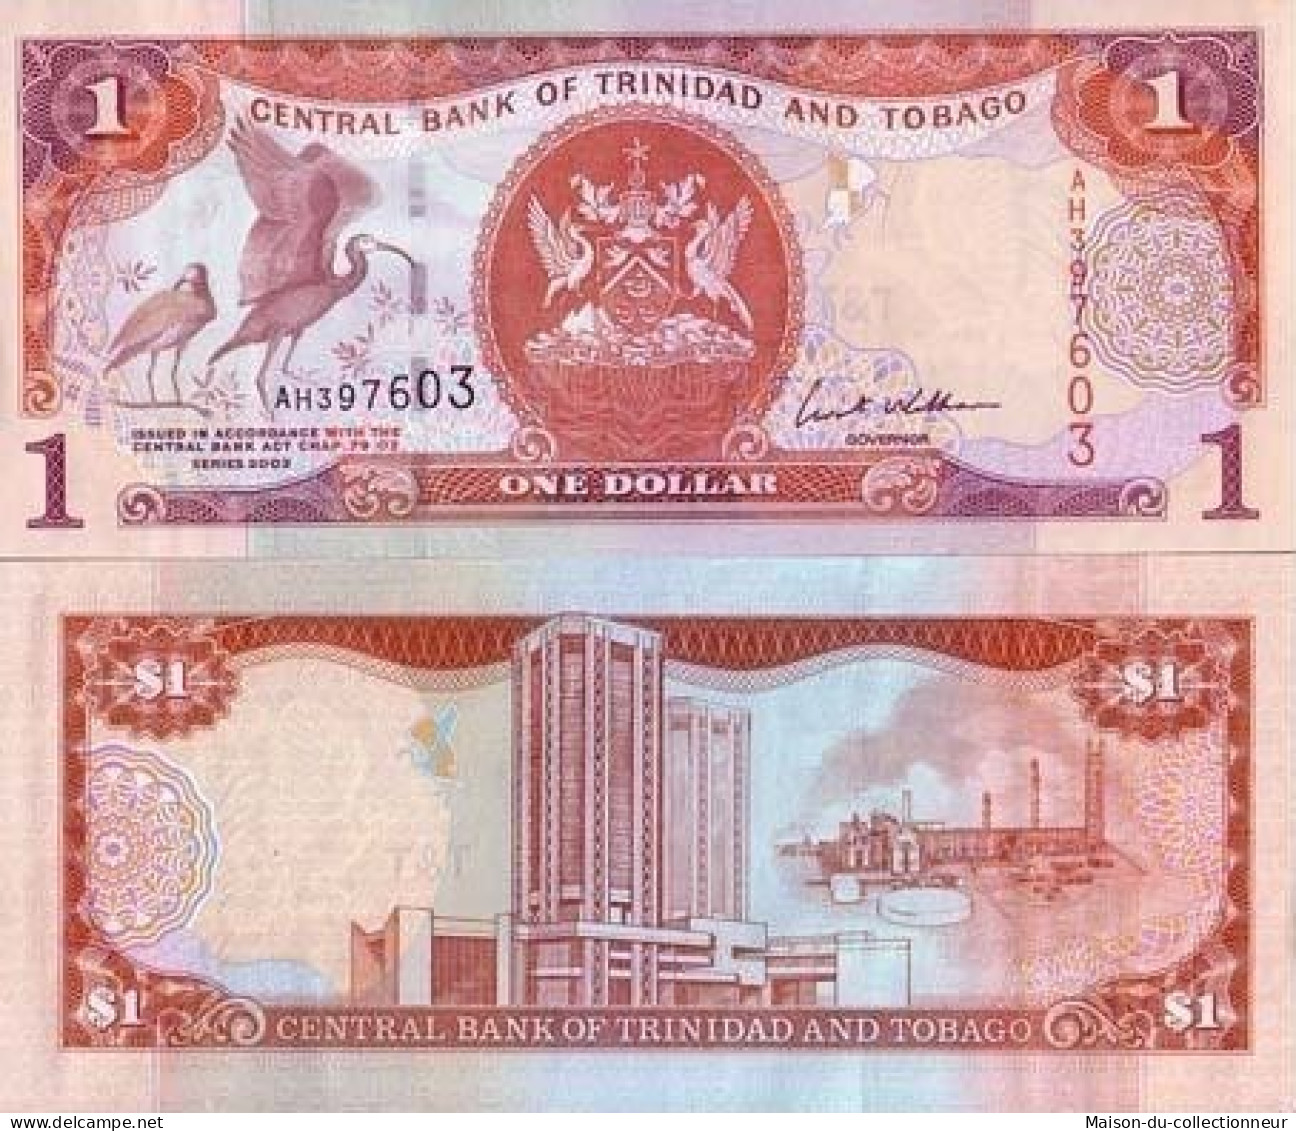 Billets De Banque Trinite & Tobago Pk N° 46 - 1 Dollars - Trinité & Tobago